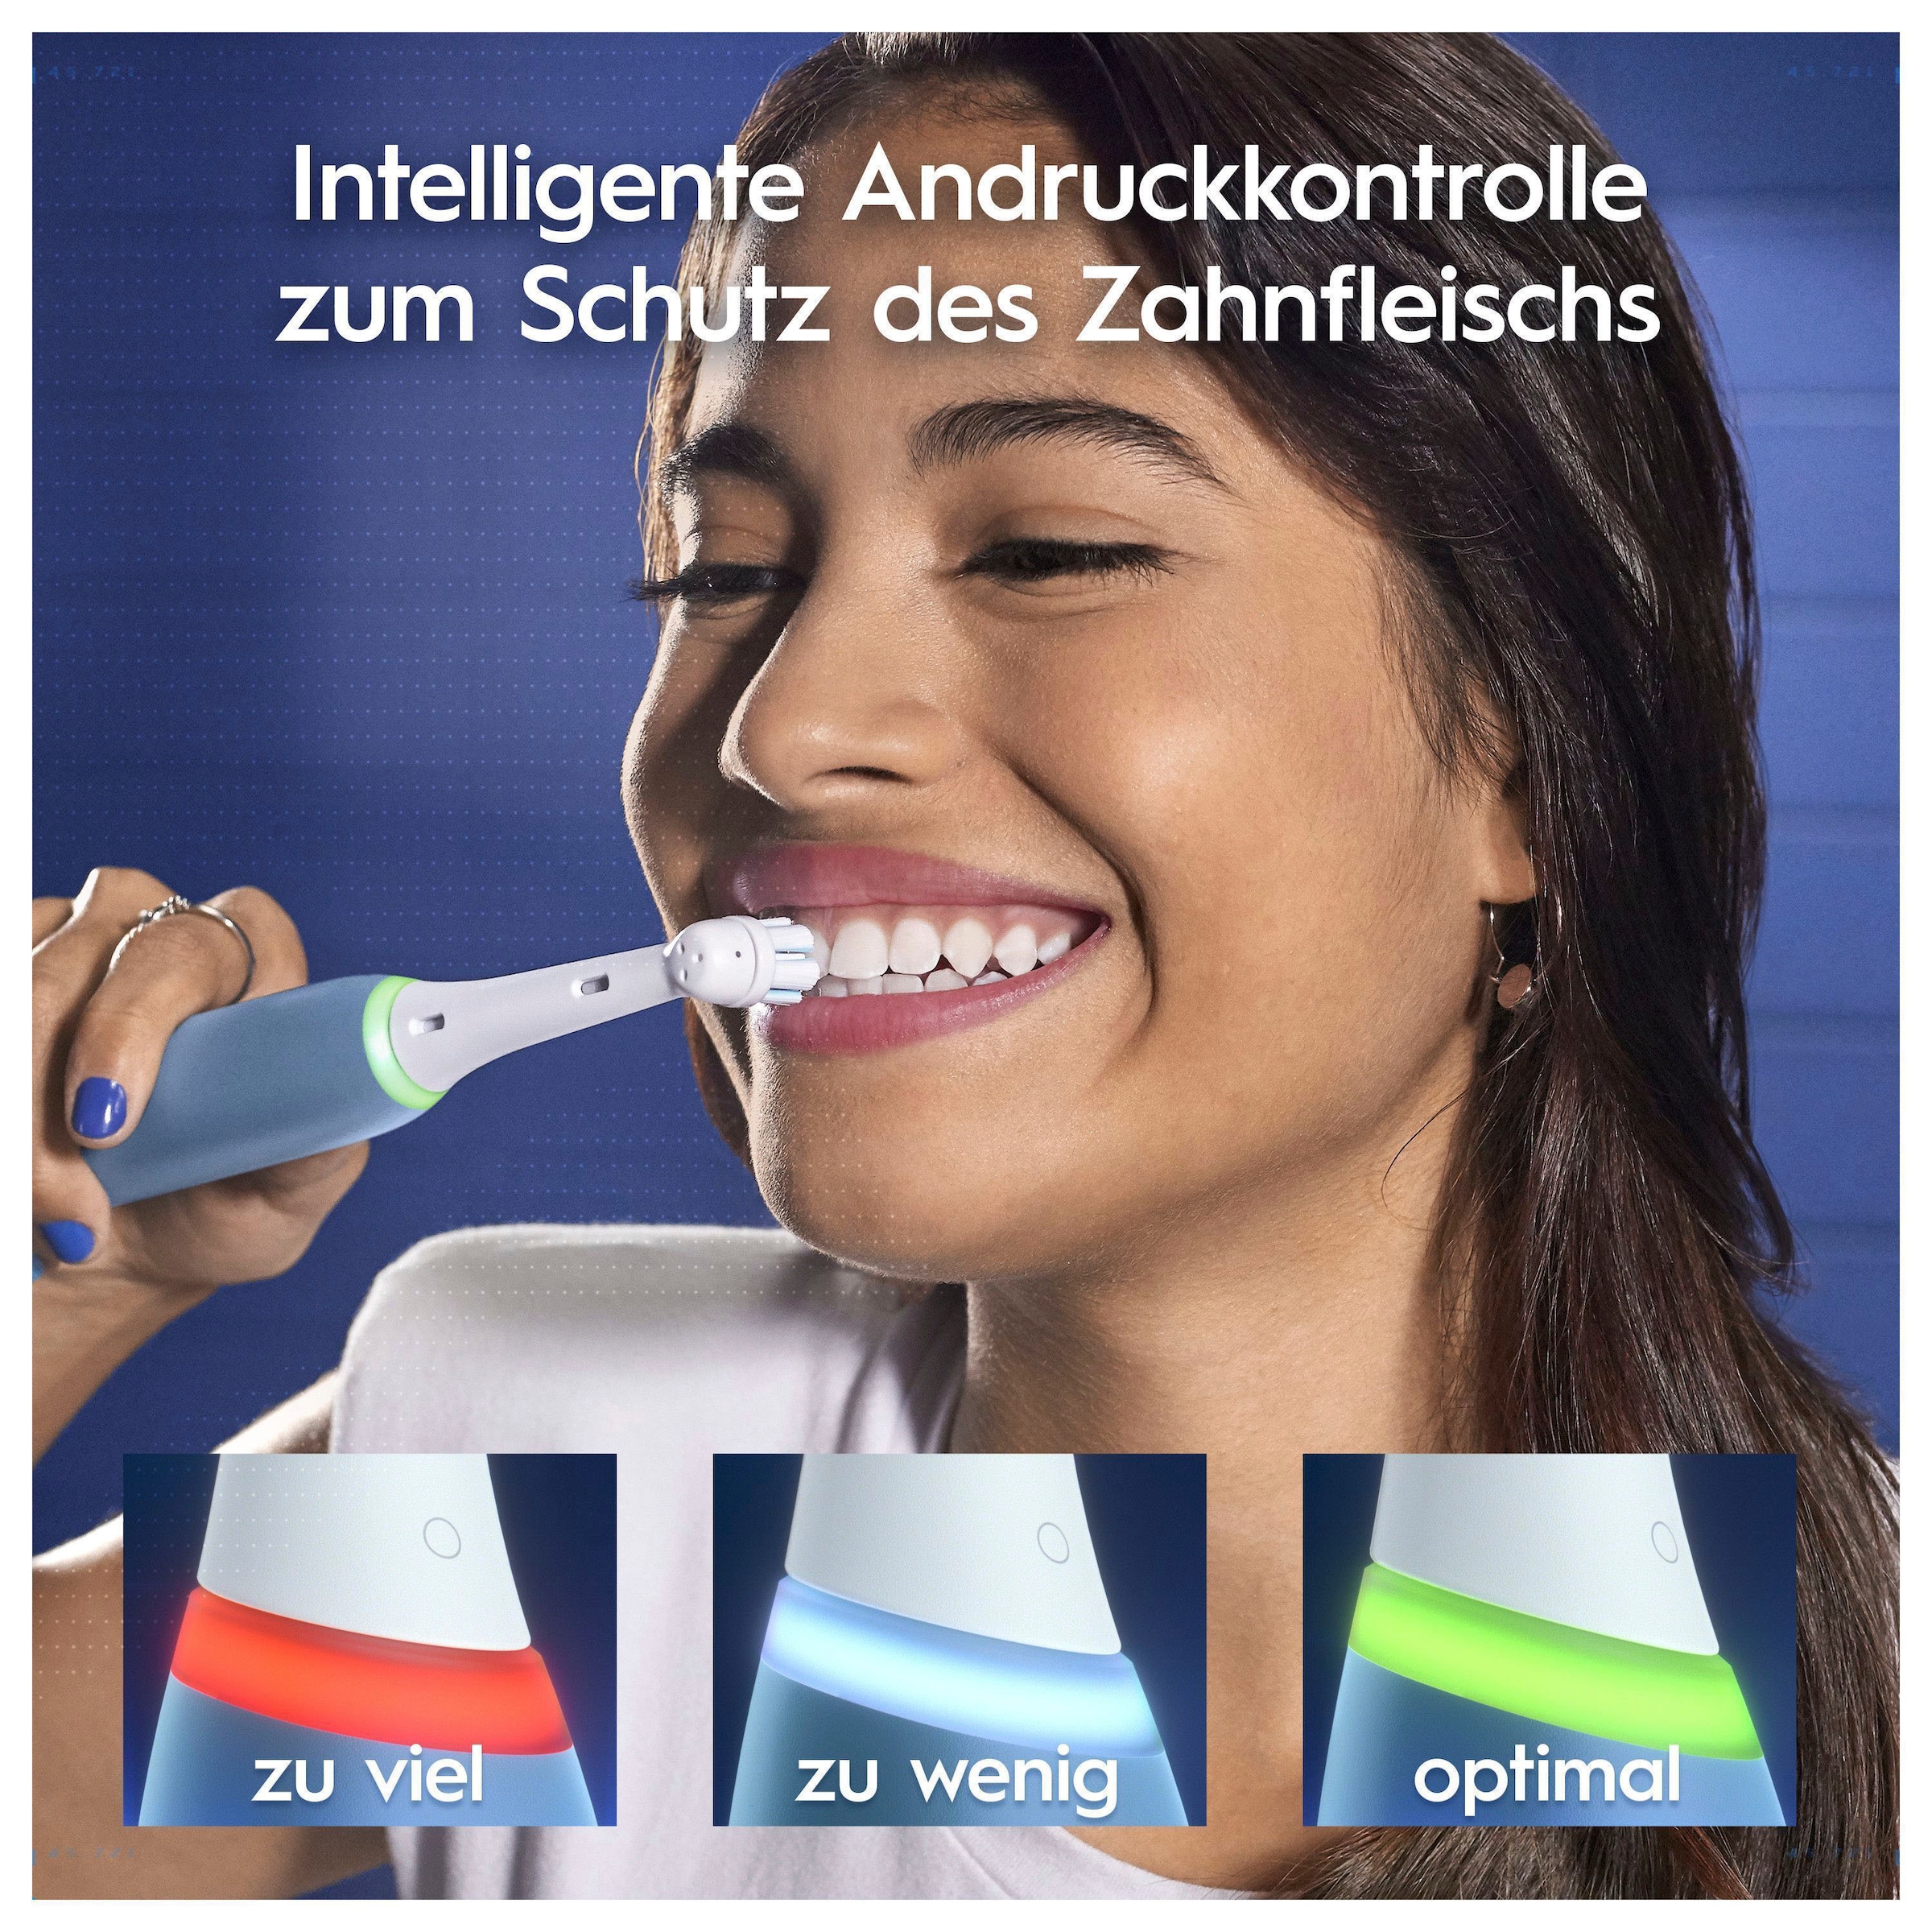 Oral-B Elektrische Zahnbürste »iO My Way«, 2 St. Aufsteckbürsten, iO Technologie